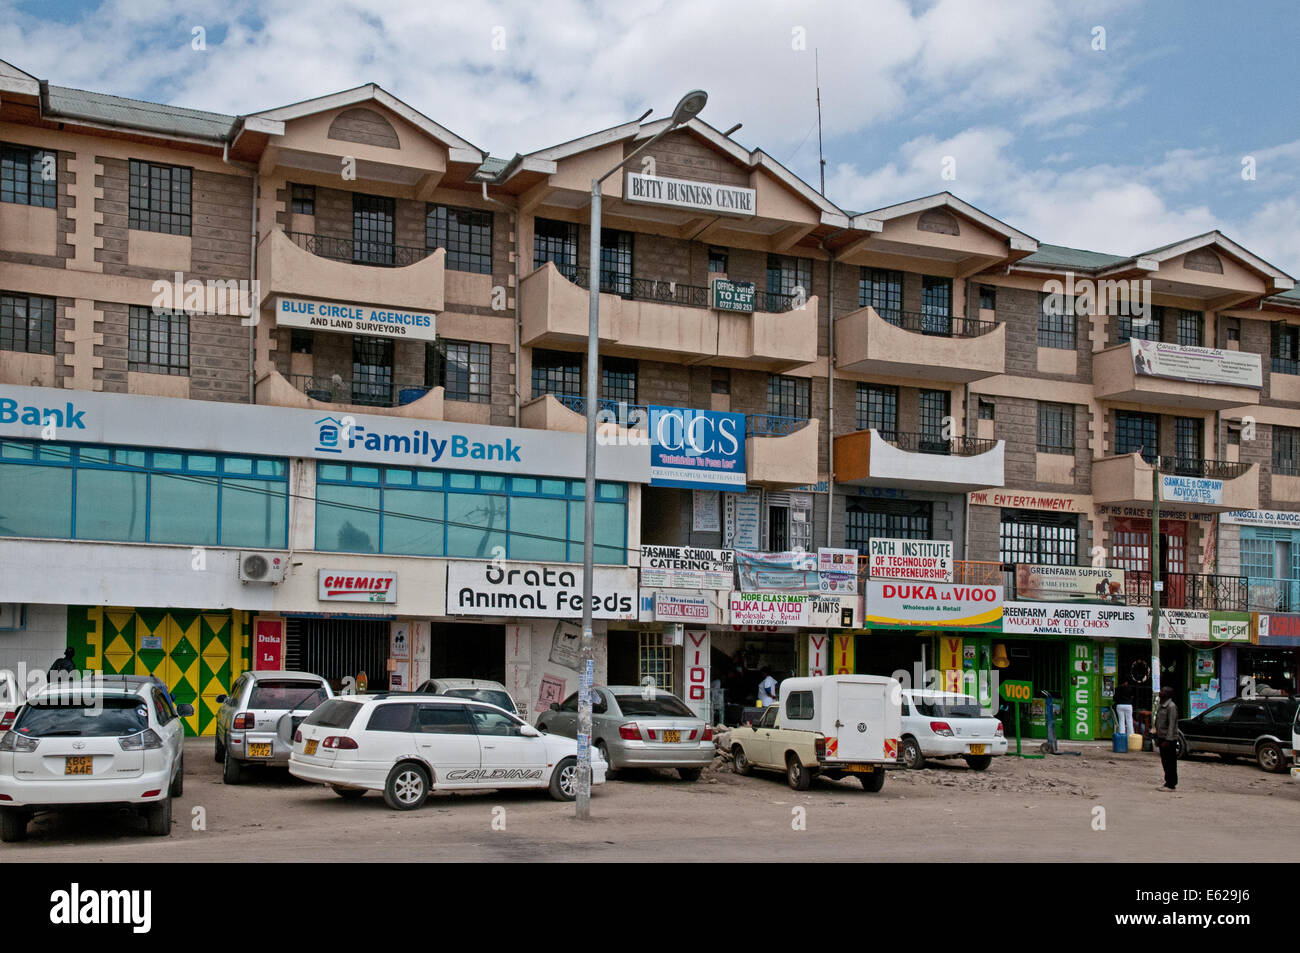 Betty Centre d'affaires de 4 étages moderne du développement des commerces et de bureaux à Kitengela sur Nairobi Kenya Afrique Namanga road Banque D'Images